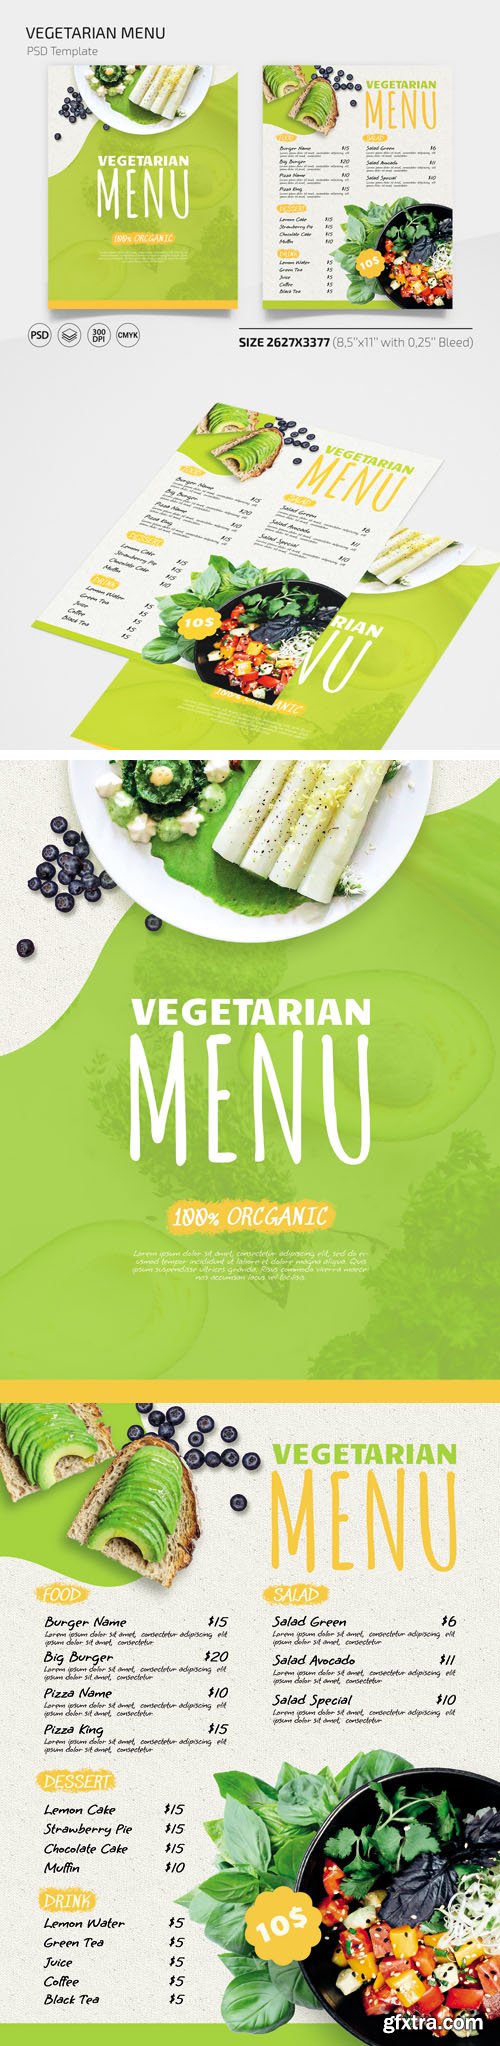 Vegetarian Menu PSD Templates